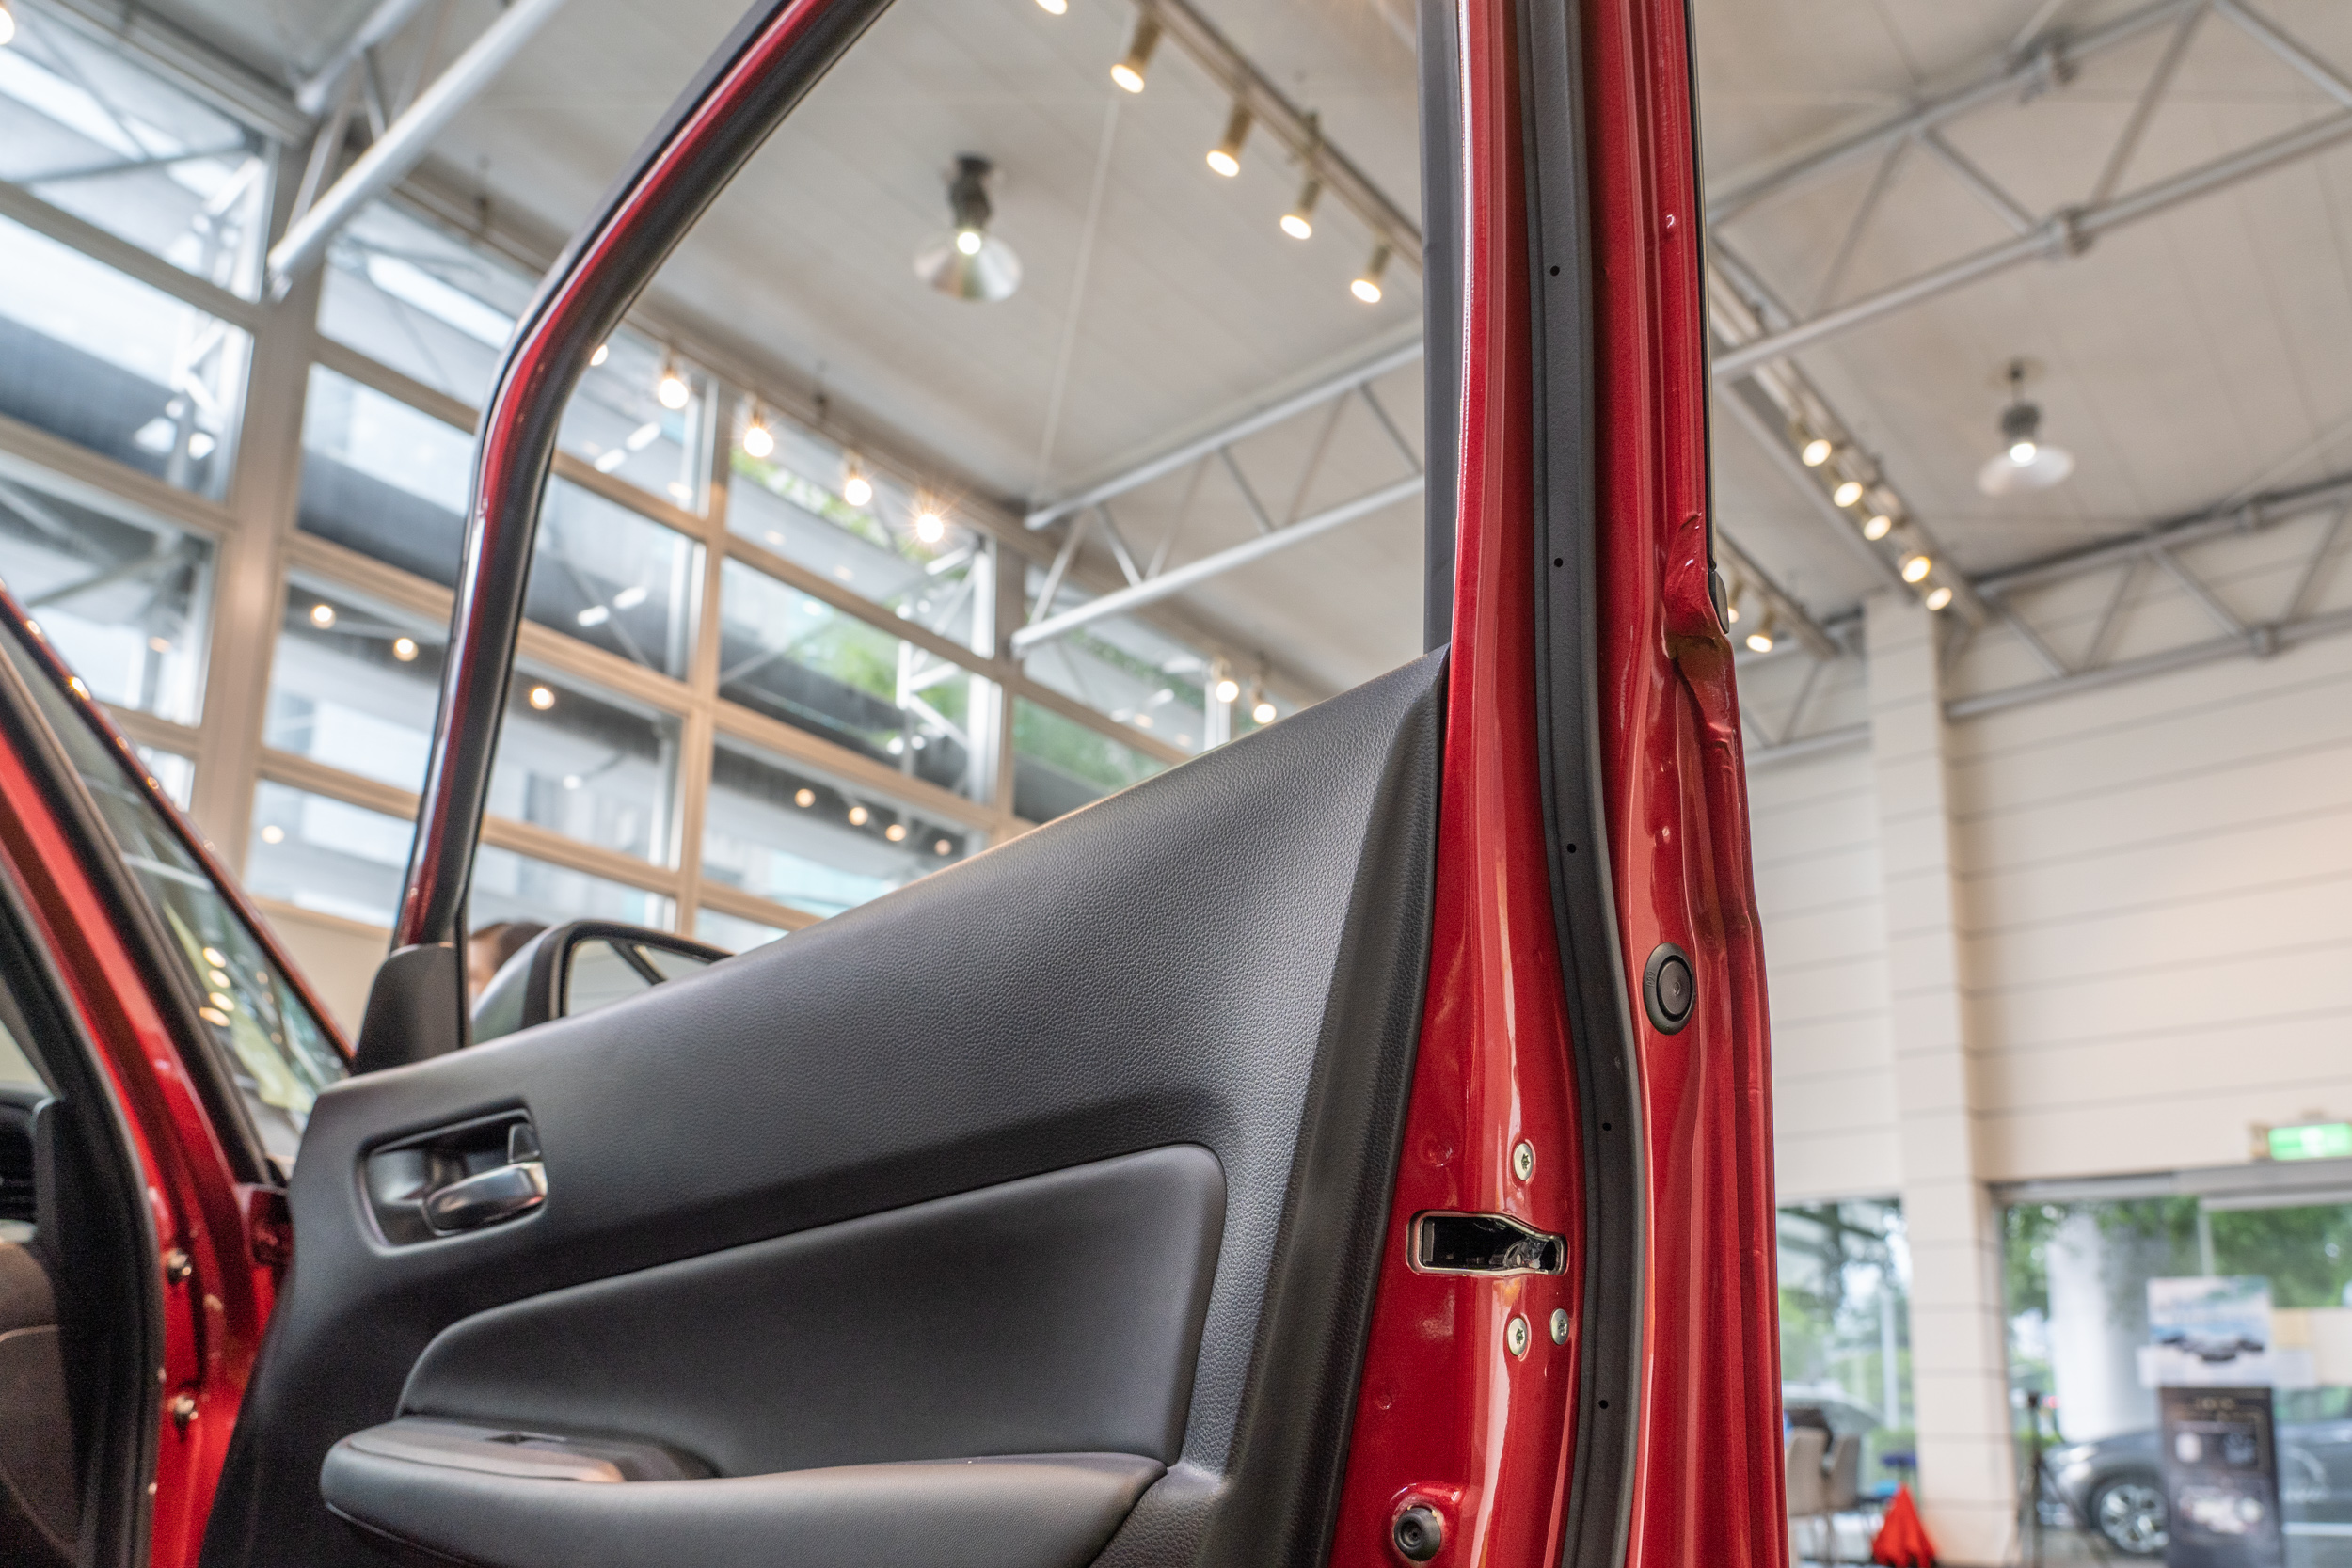 過去車門鈑件設計區分為窗框與車門上下兩部分，全新 Fit 更加簡化鈑件數量，可同步減少車門厚度與提升剛性。